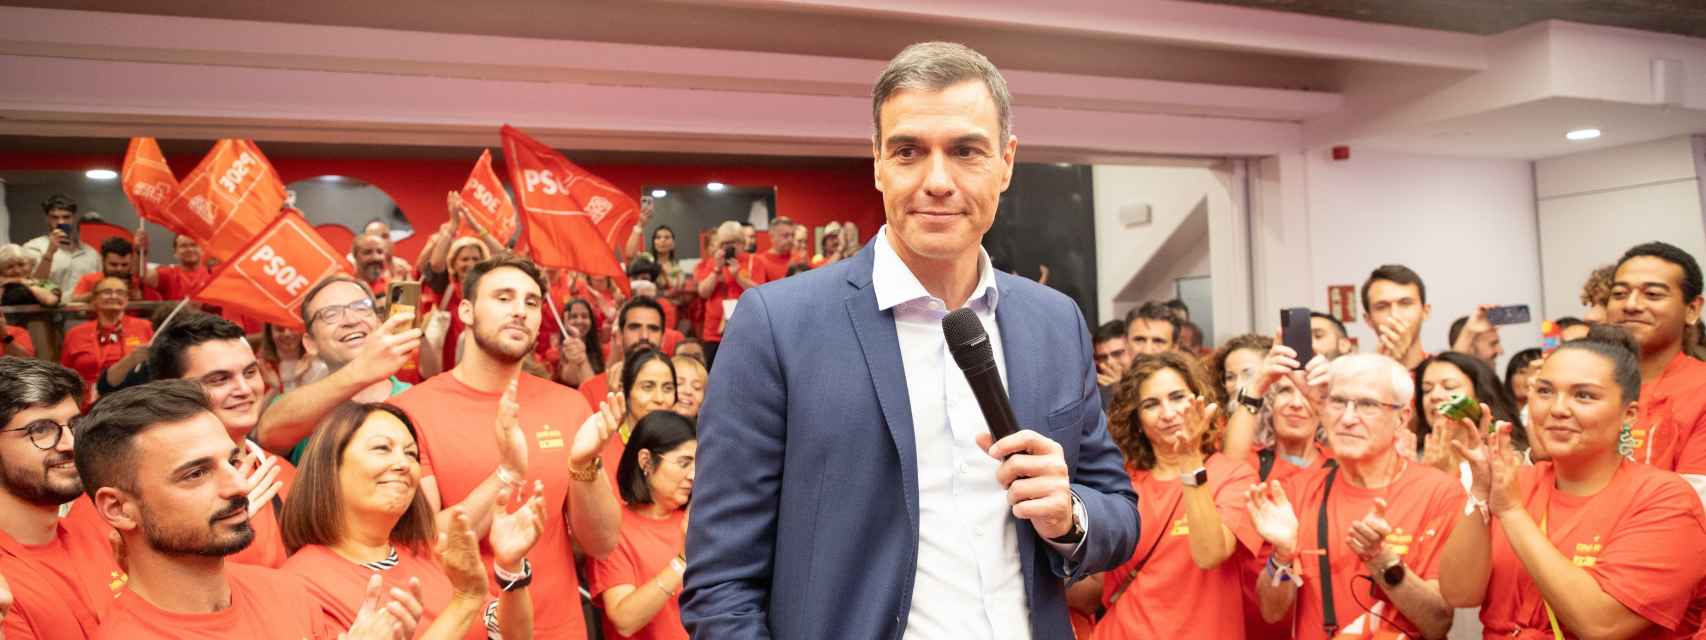 Pedro Sánchez celebra en Ferraz su intervención en el cara a cara